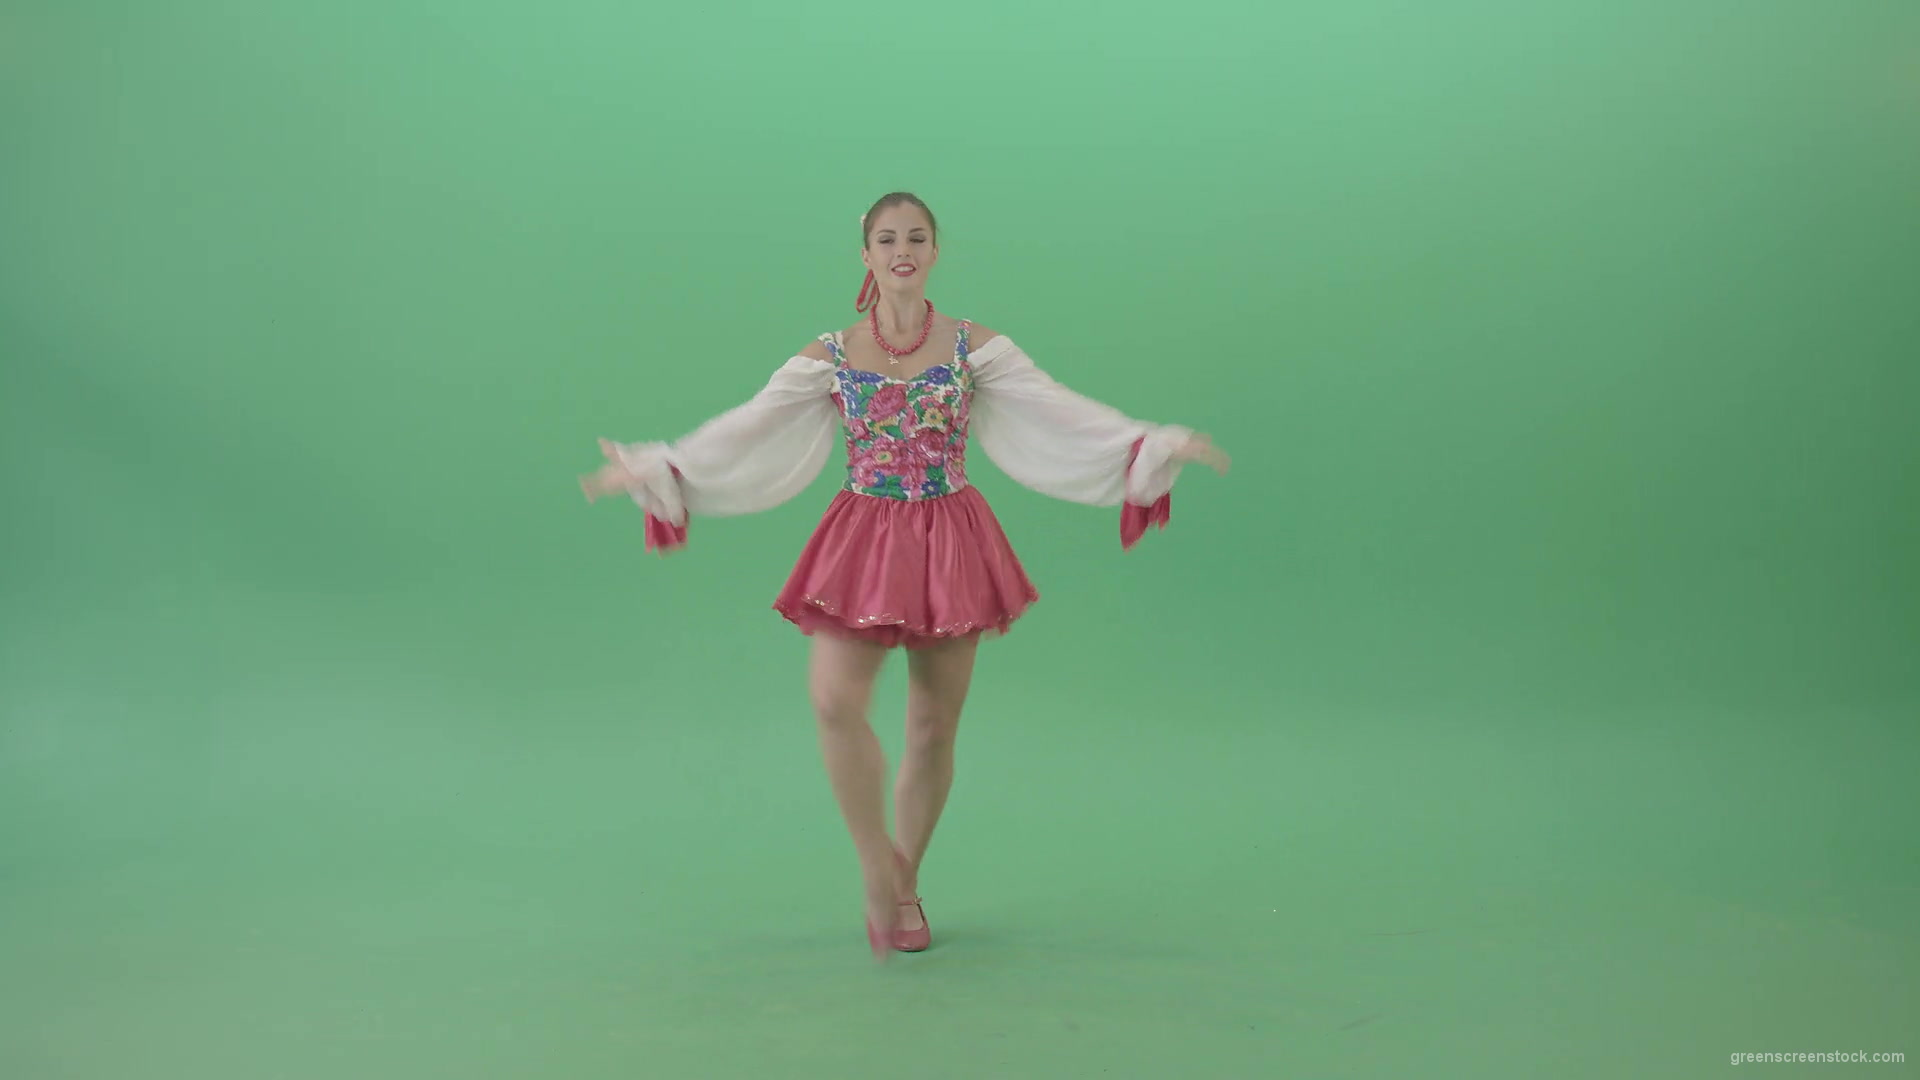 vj video background Ukraine-Folk-Girl-dancing-ethno-social-ukrainian-dance-isolated-on-Green-Screen-1920_003